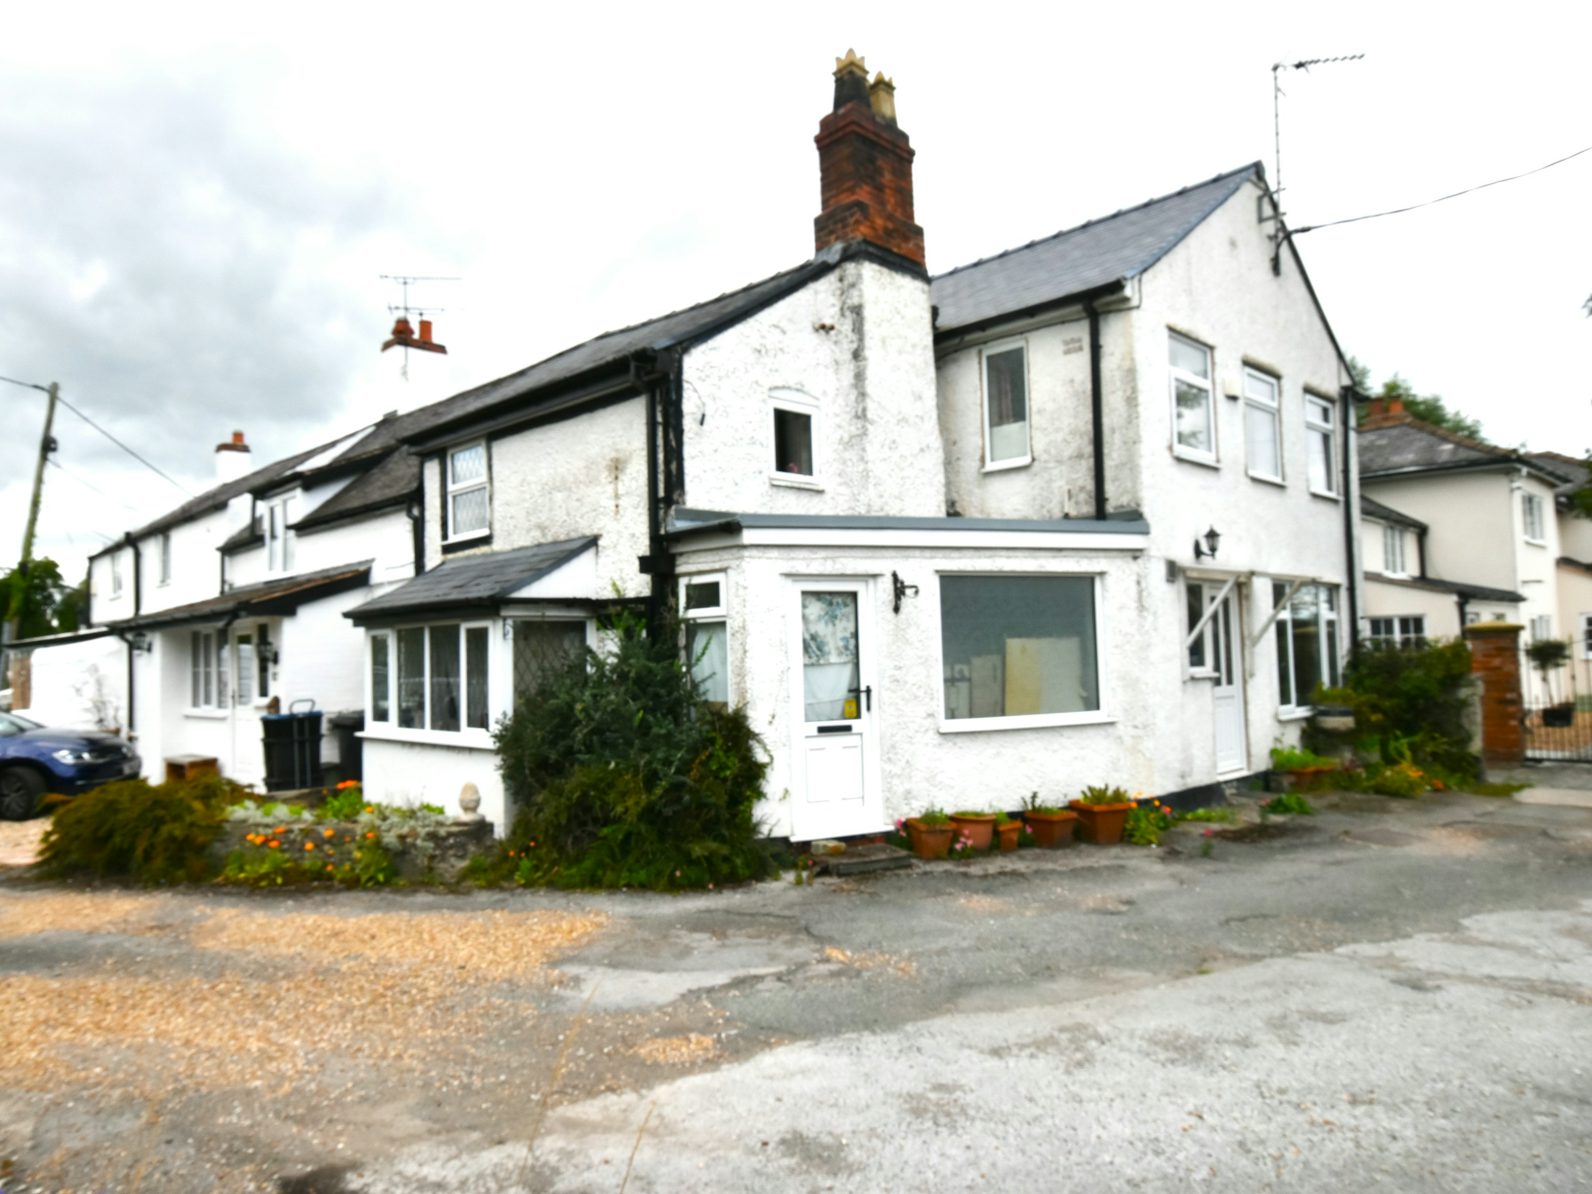 House for sale on Harwoods Lane Rossett, Wrexham, LL12